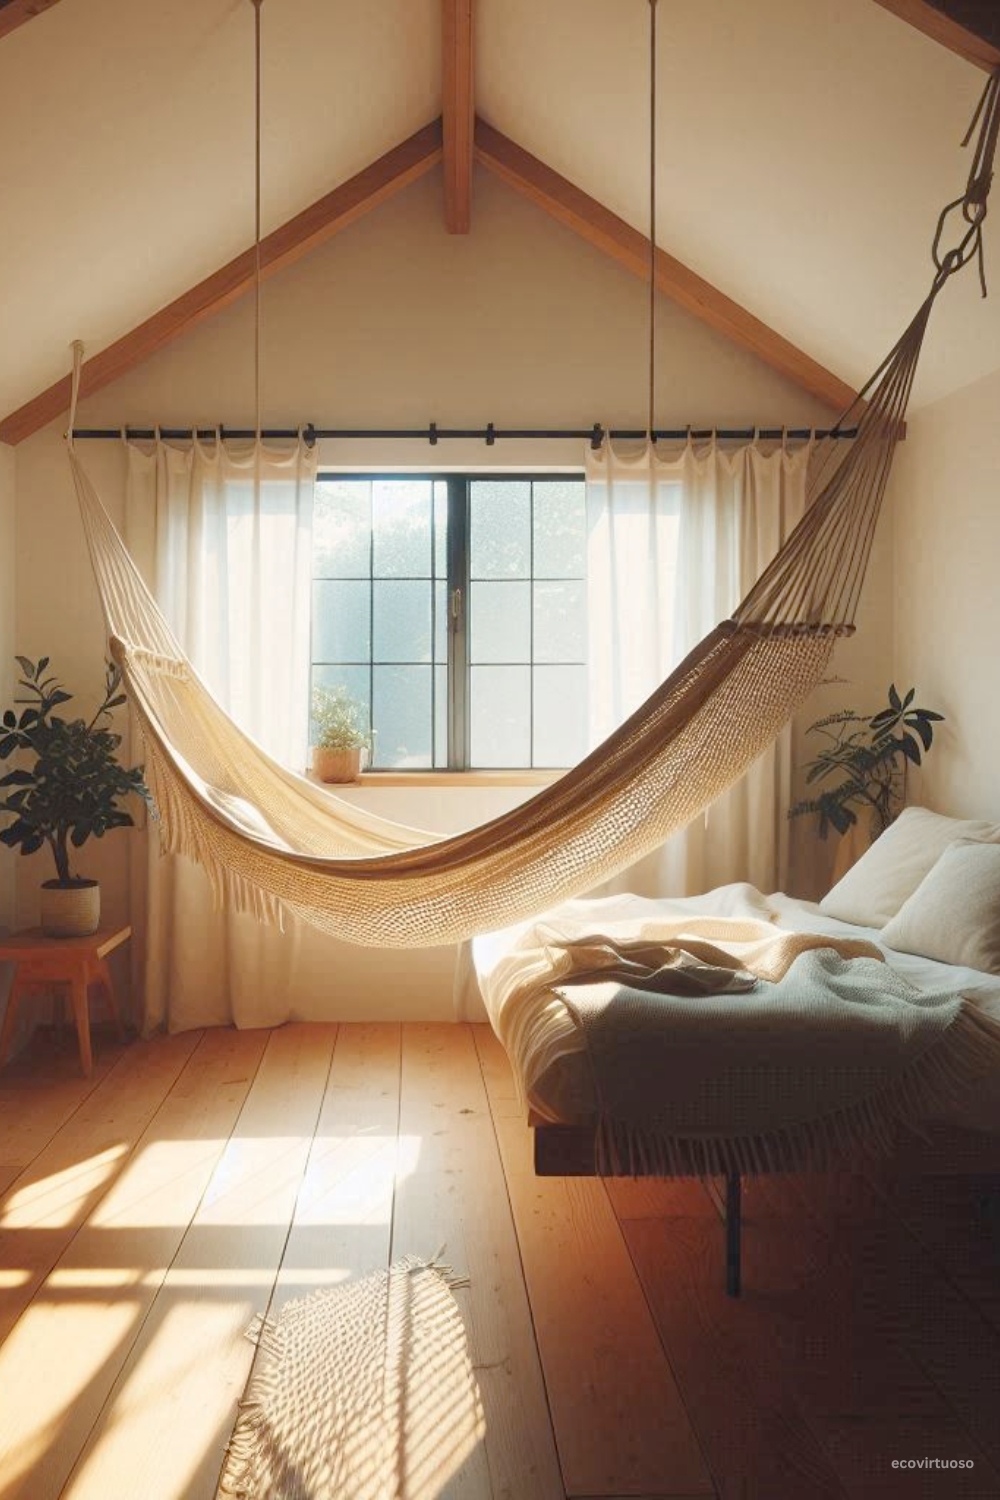 a hammock inside a bedroom